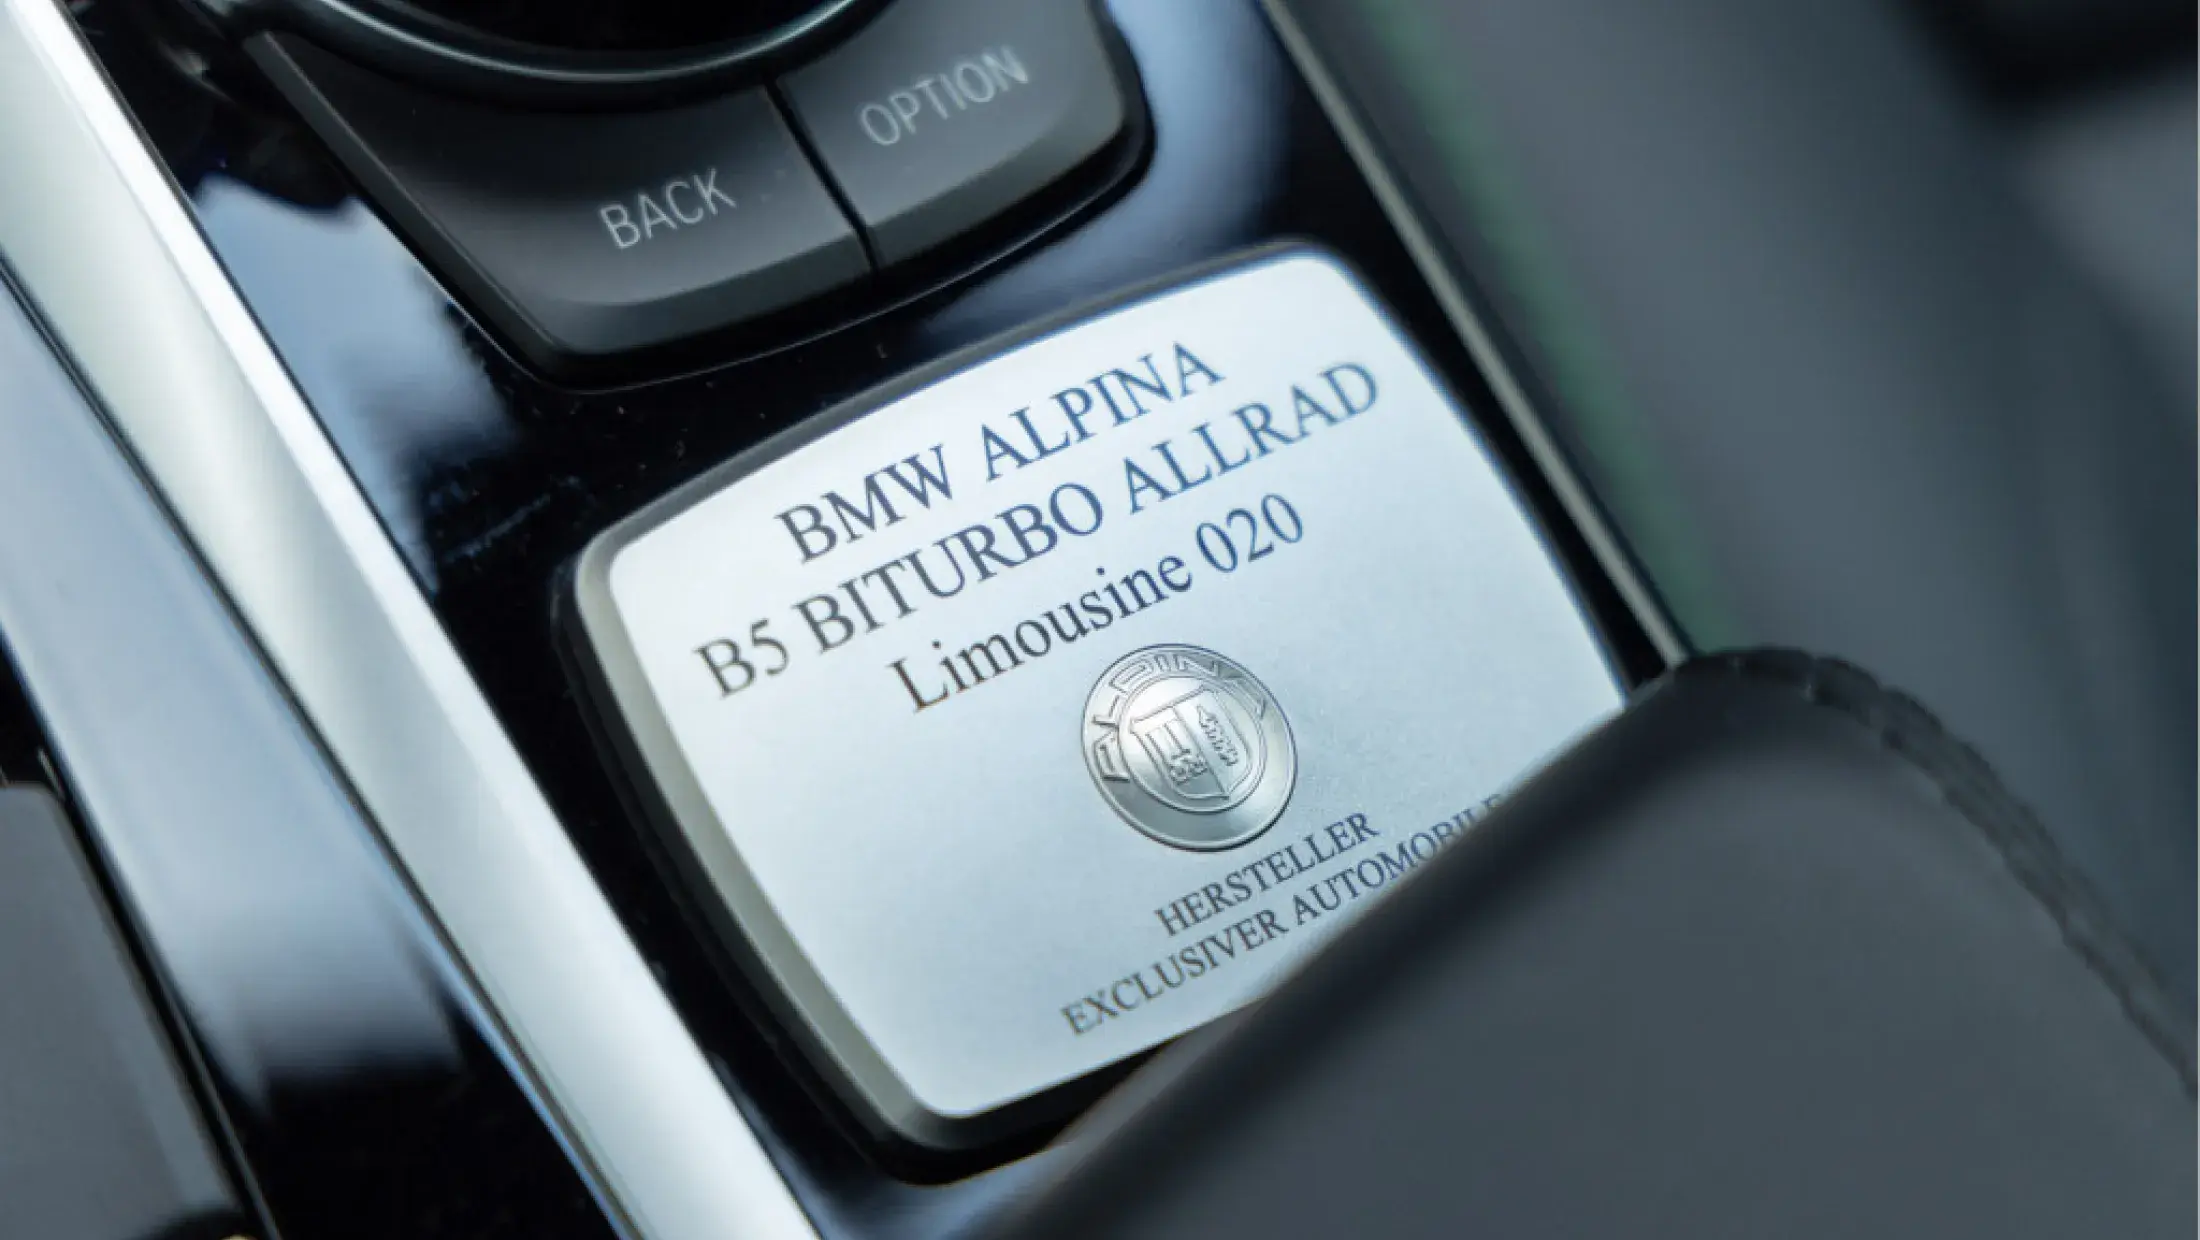 ALPINA B5 Bi-Turbo BMW Individual Special Request Nachtblau Metallic Sedan G30 Lavalina II Bergwerff